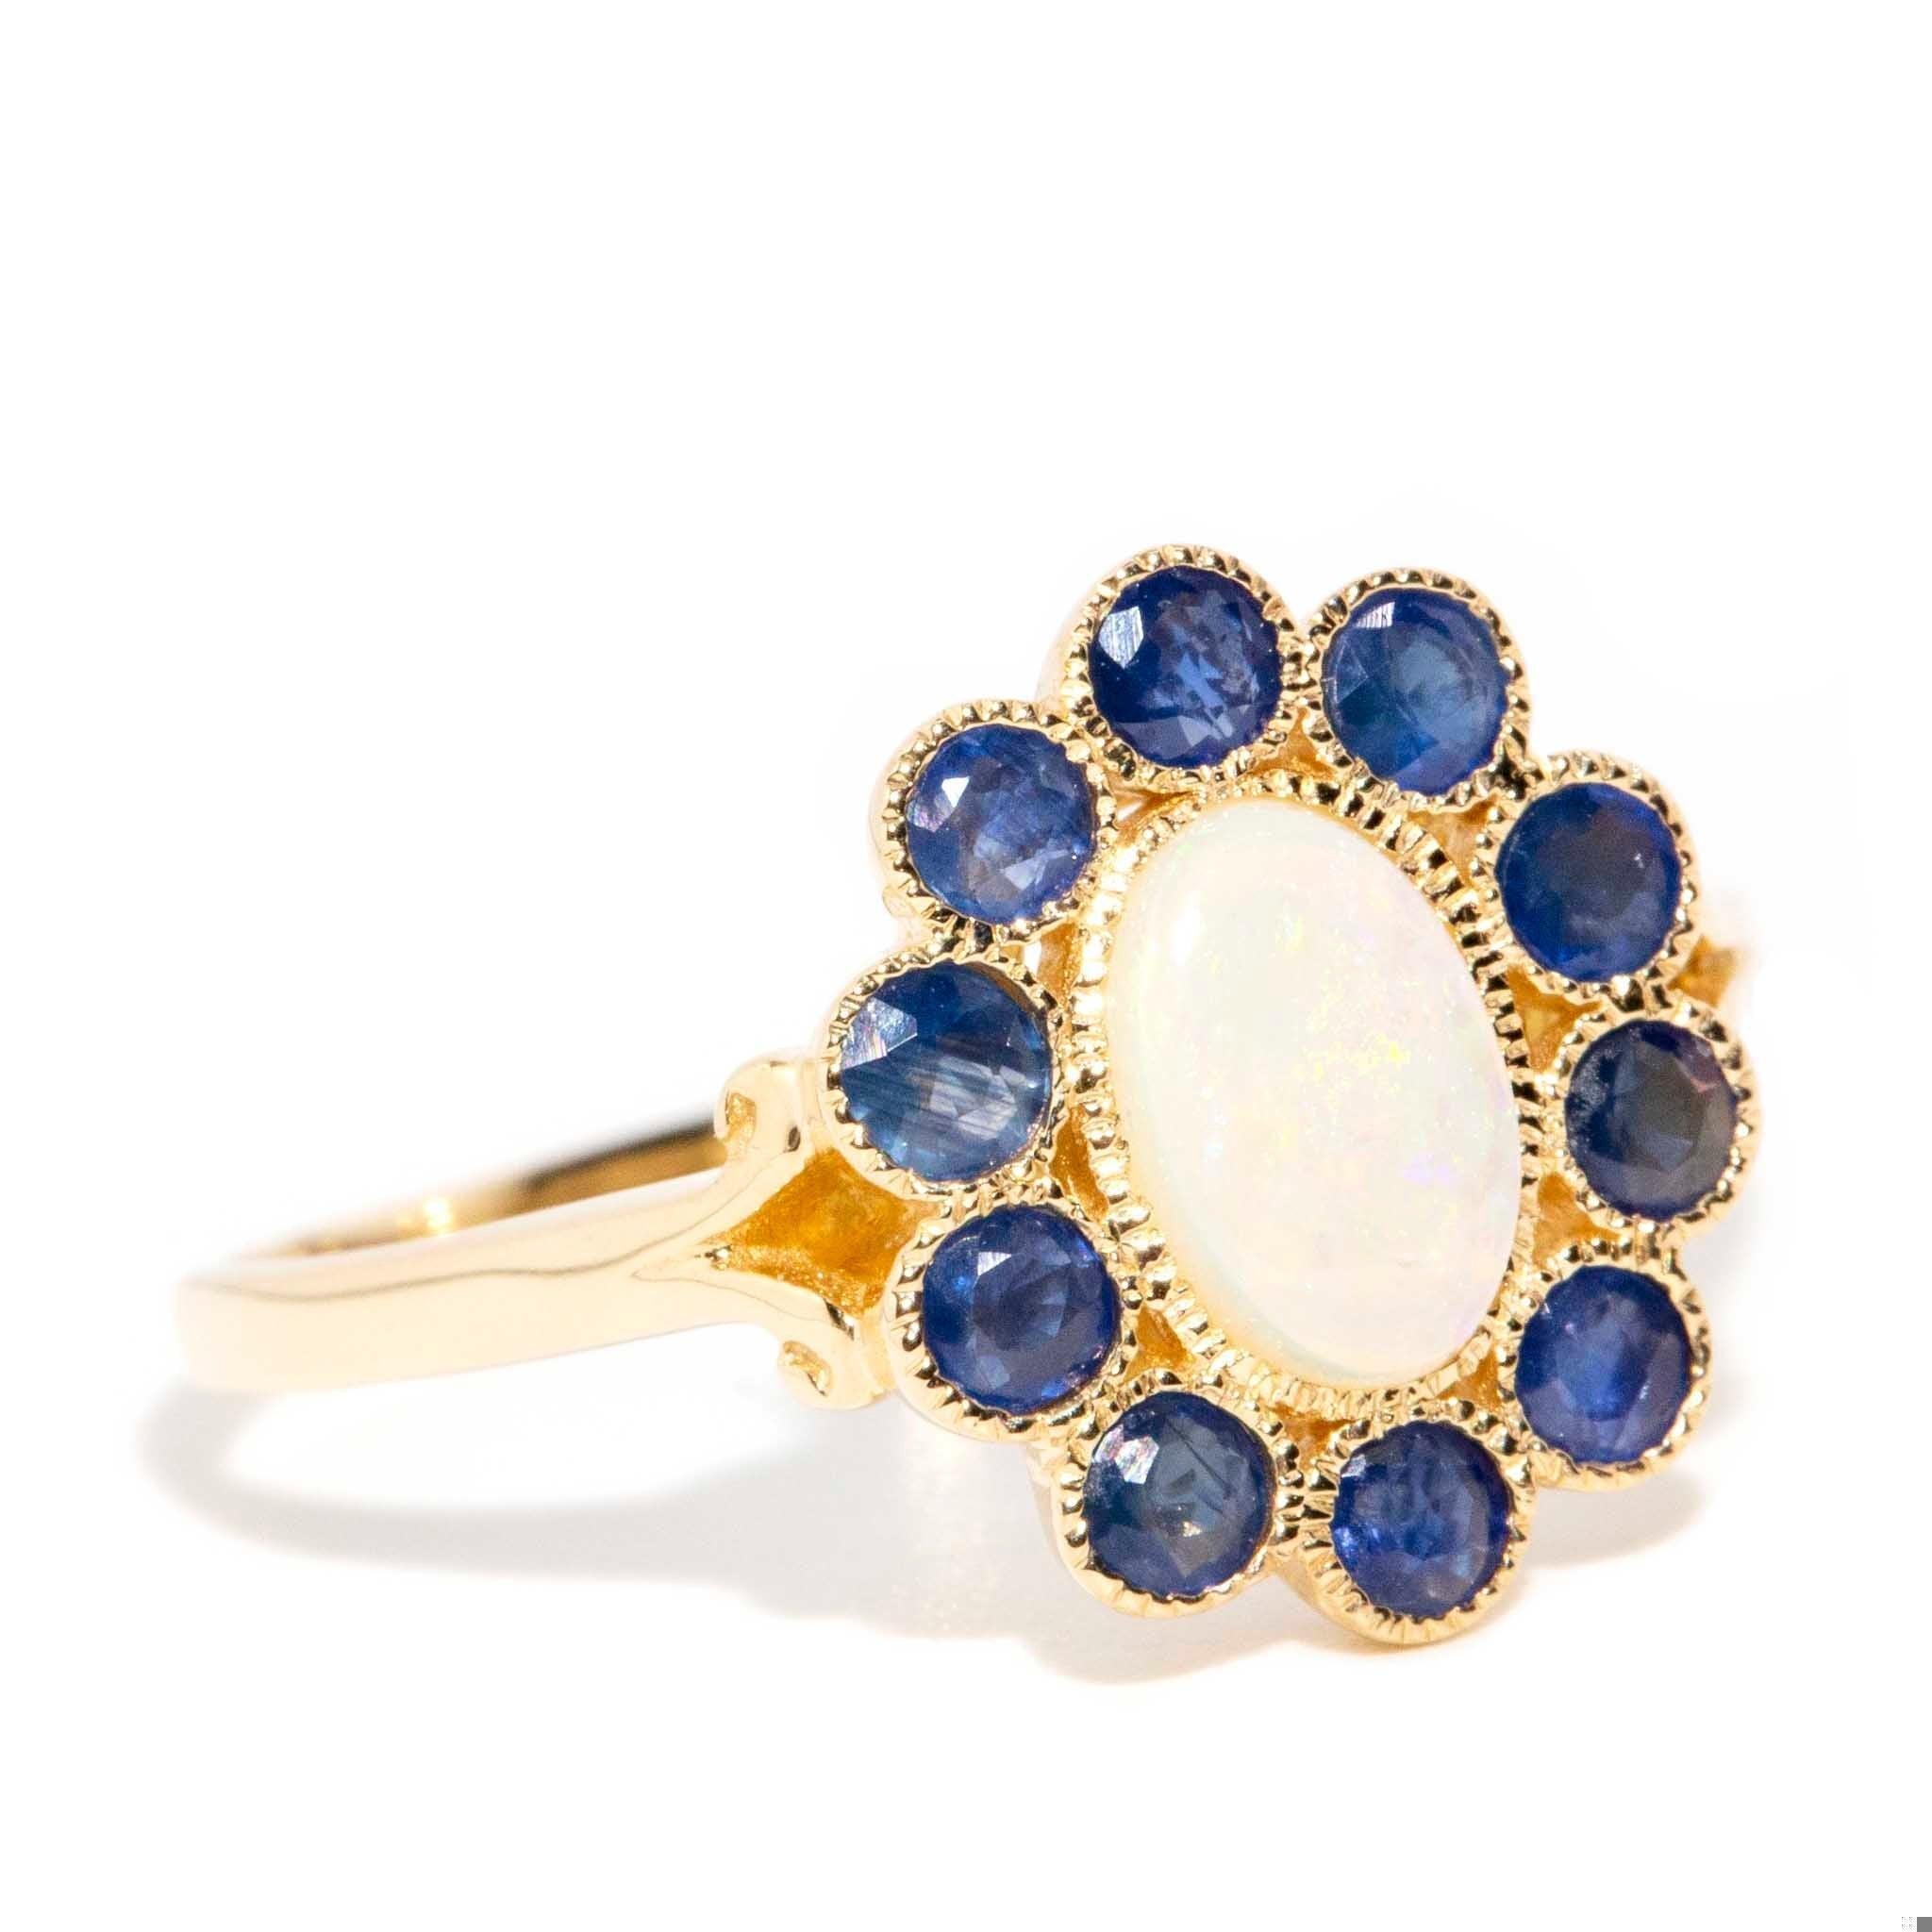 Der Carole-Ring mit seinem atemberaubenden Opal, umrahmt von reichhaltigen blauen Saphiren, ist eine Anspielung auf eine glamouröse Vergangenheit. Beeinflusst von einer Ära, in der Technicolour in all seiner lebendigen Pracht herrschte, ist sie ein